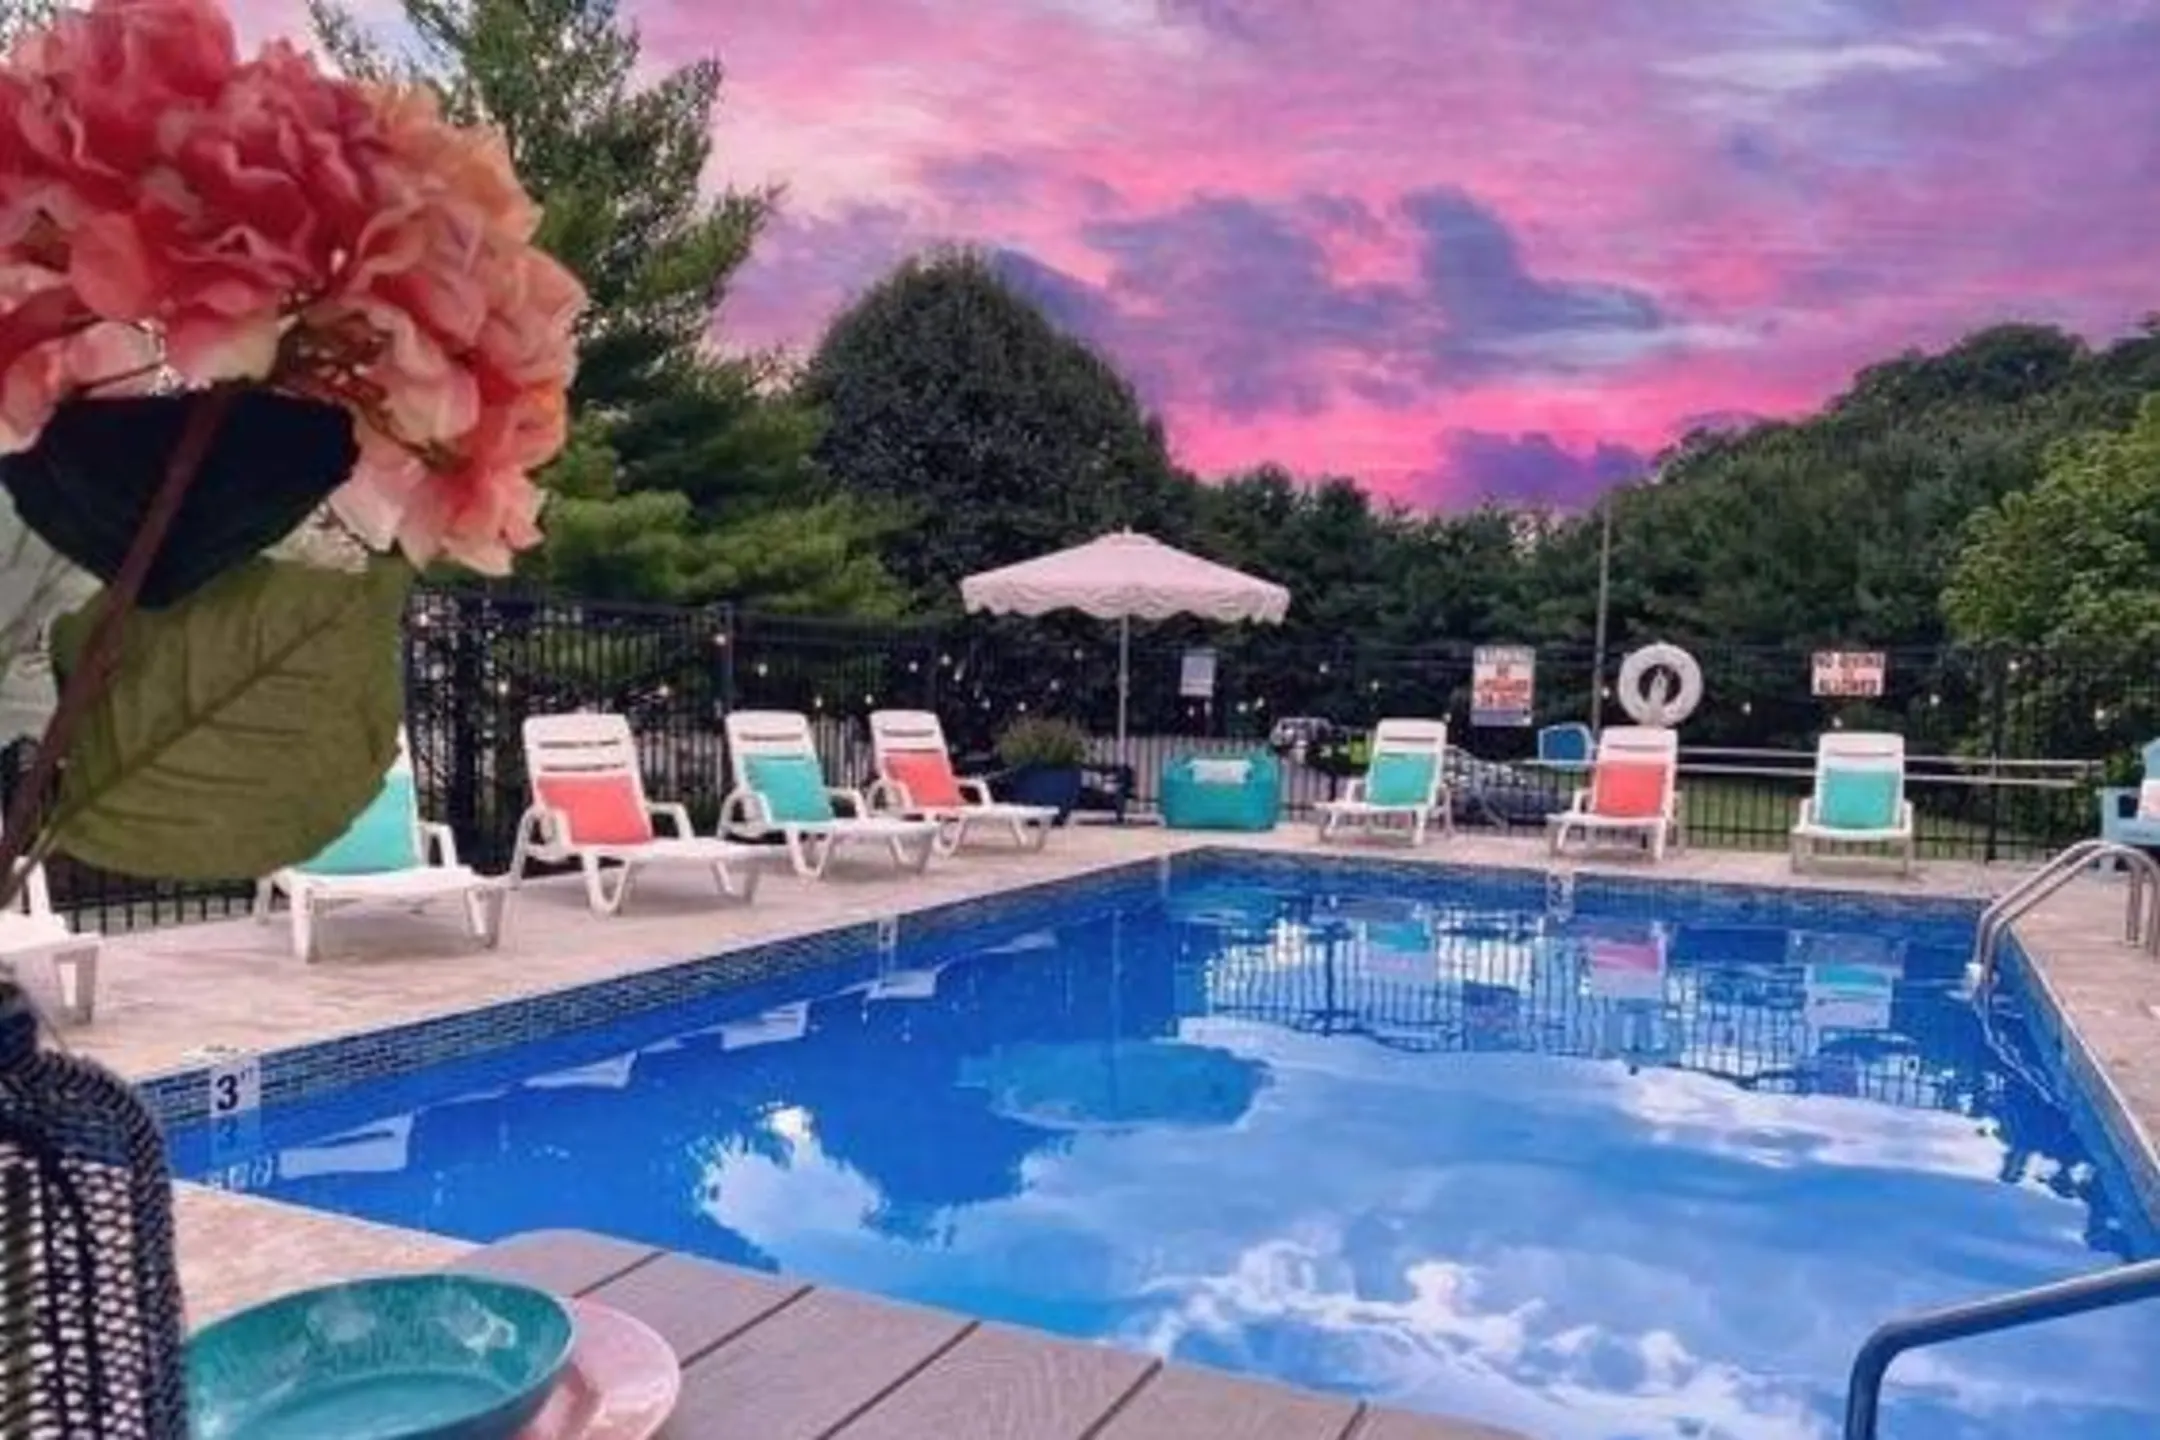 Pool - Apple Villa Apartments - Blountville, TN